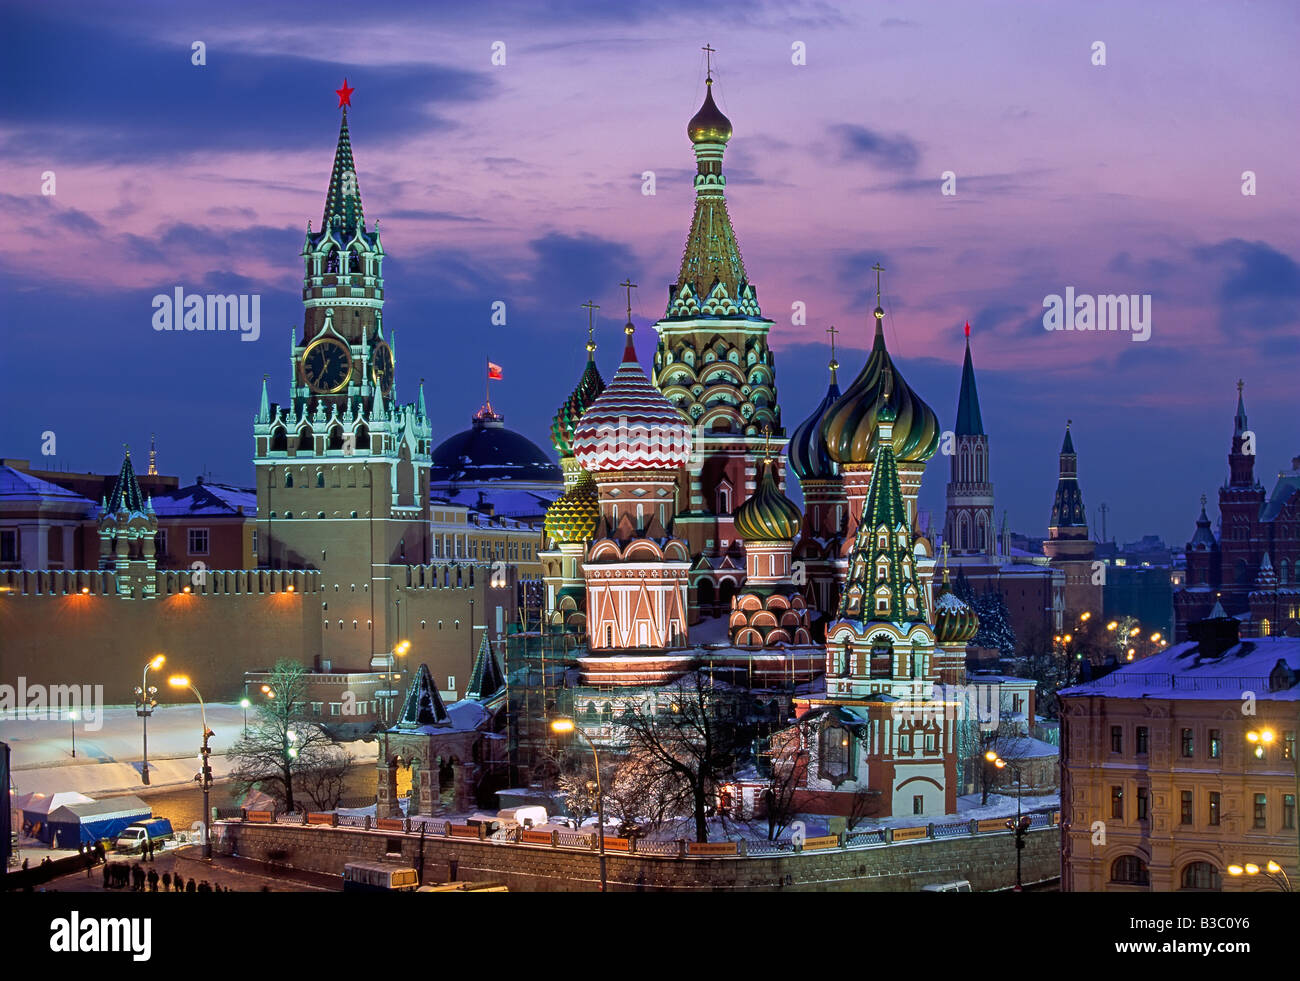 La cathédrale Saint-Basile chrétienne en neige de l'hiver, la Place Rouge, l'UNESCO World Heritage Site, Moscou, Russie, Europe Banque D'Images